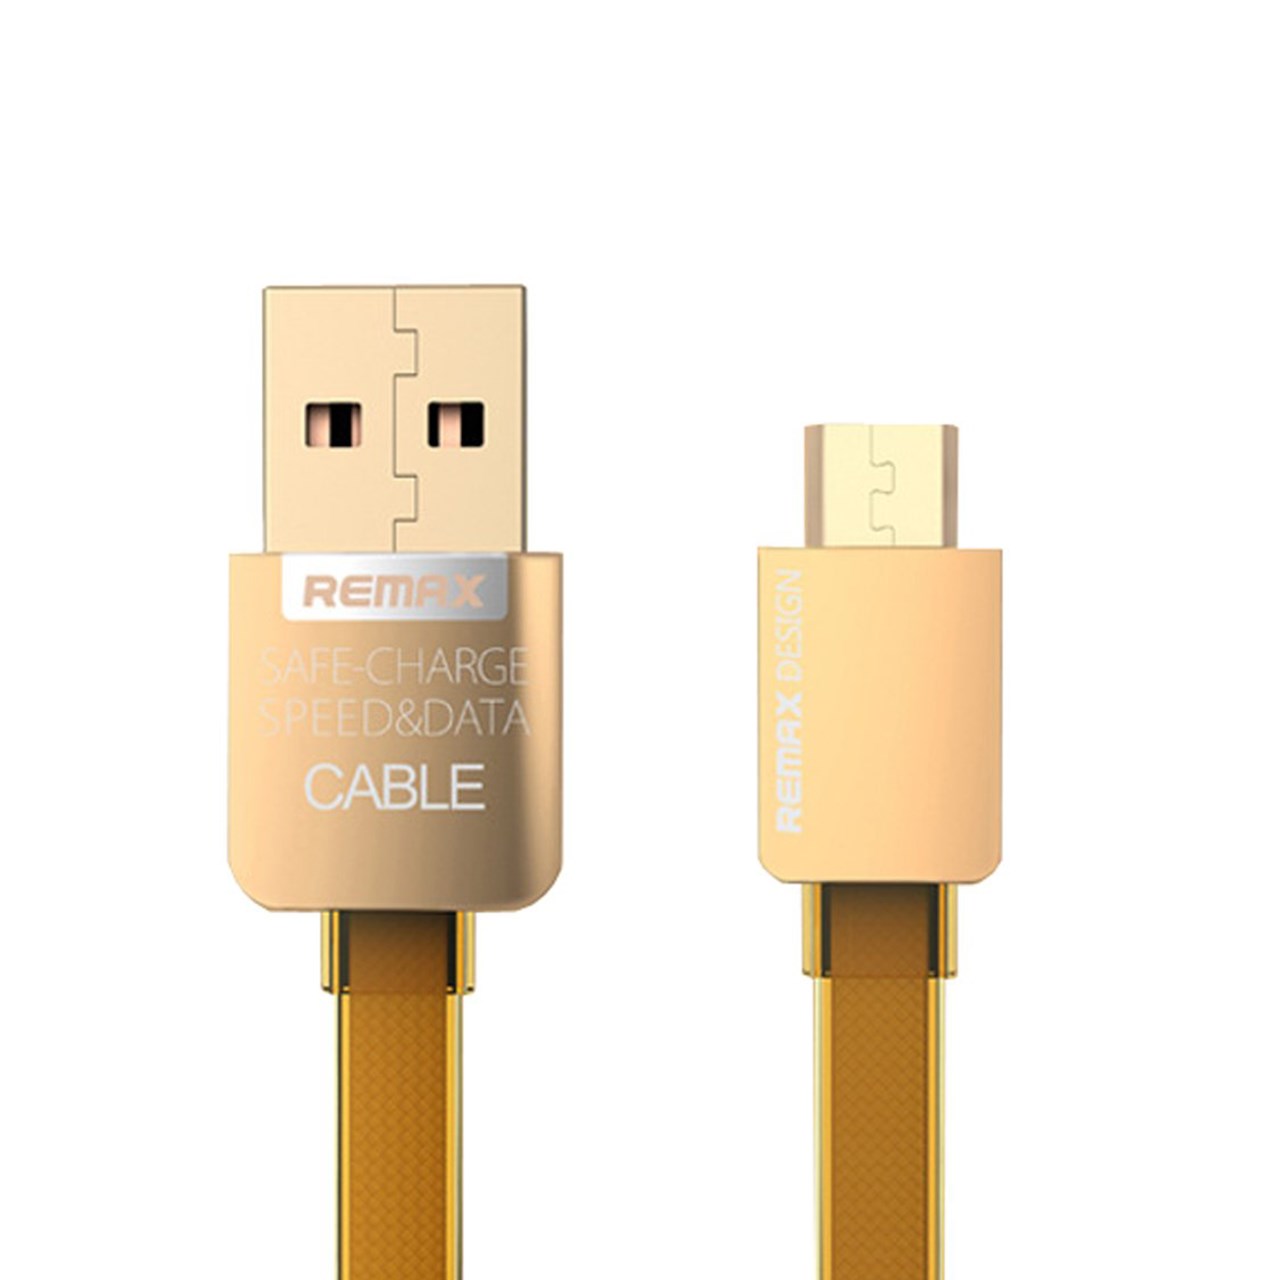 کابل USB به MicroUSB ریمکس مدل Gold Safe and Speed به طول 1متر